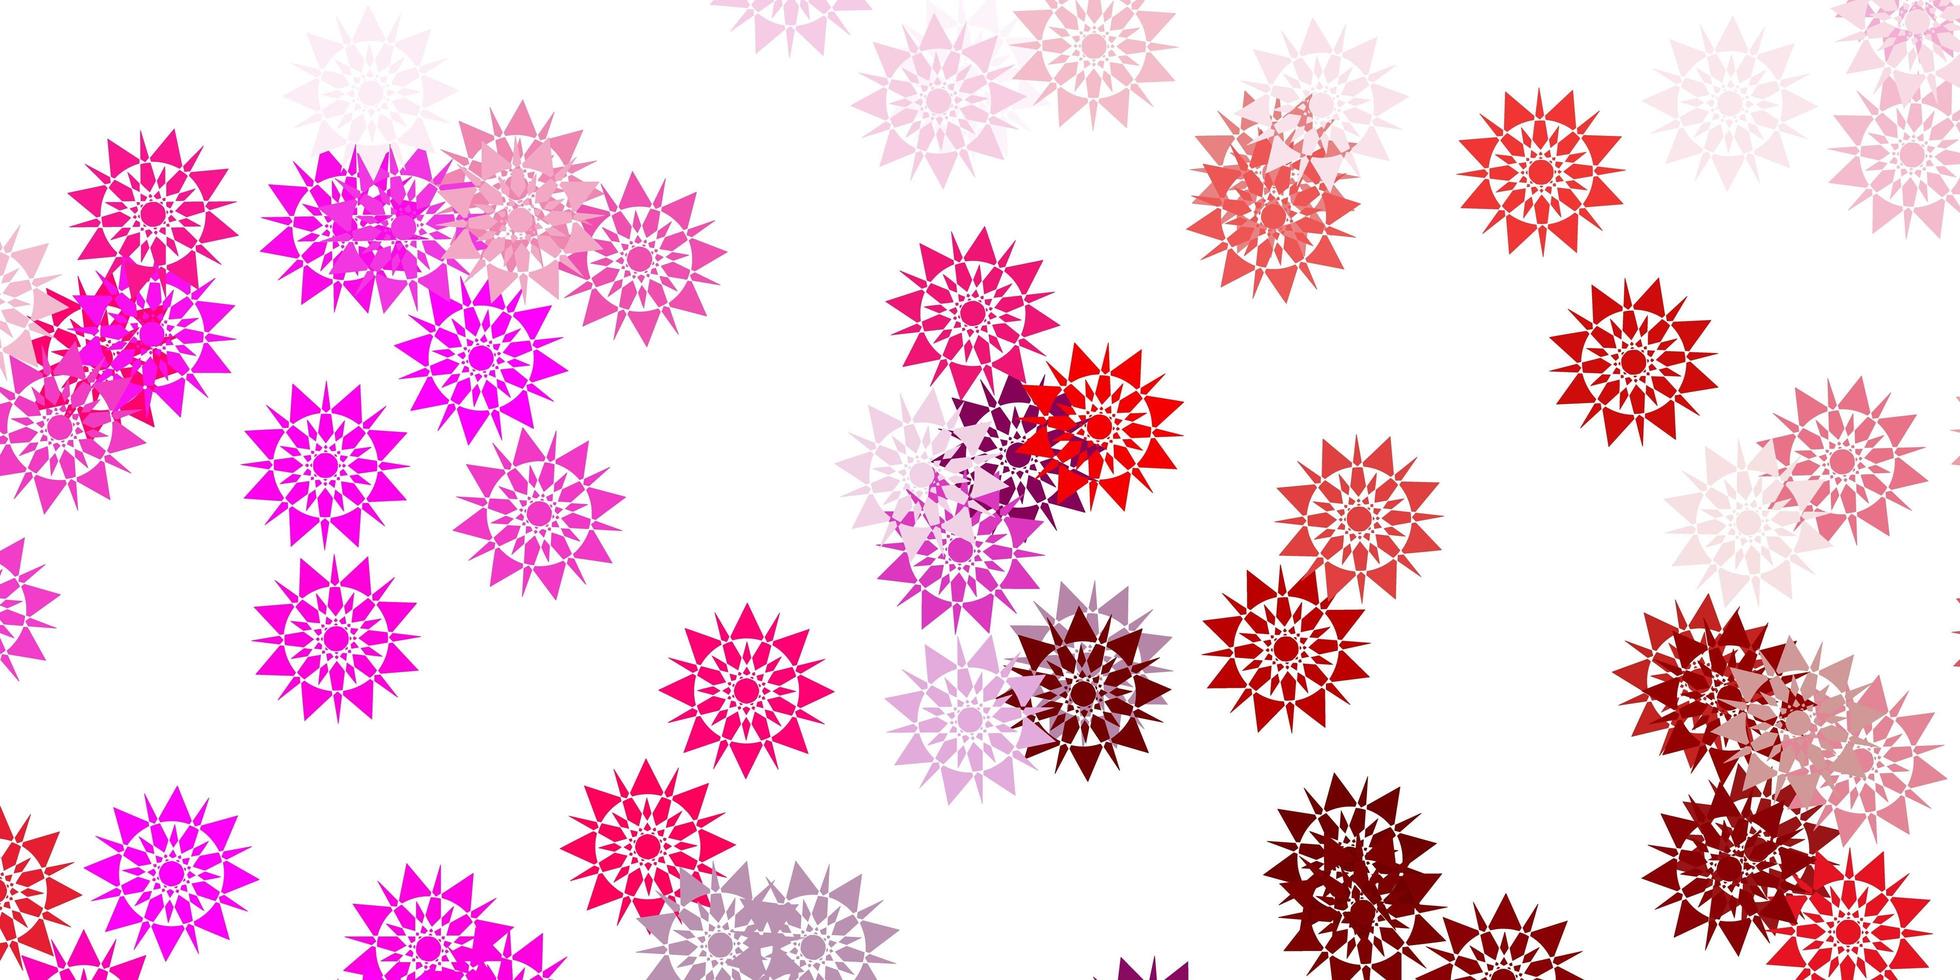 texture vettoriale viola chiaro, rosa con fiocchi di neve luminosi.